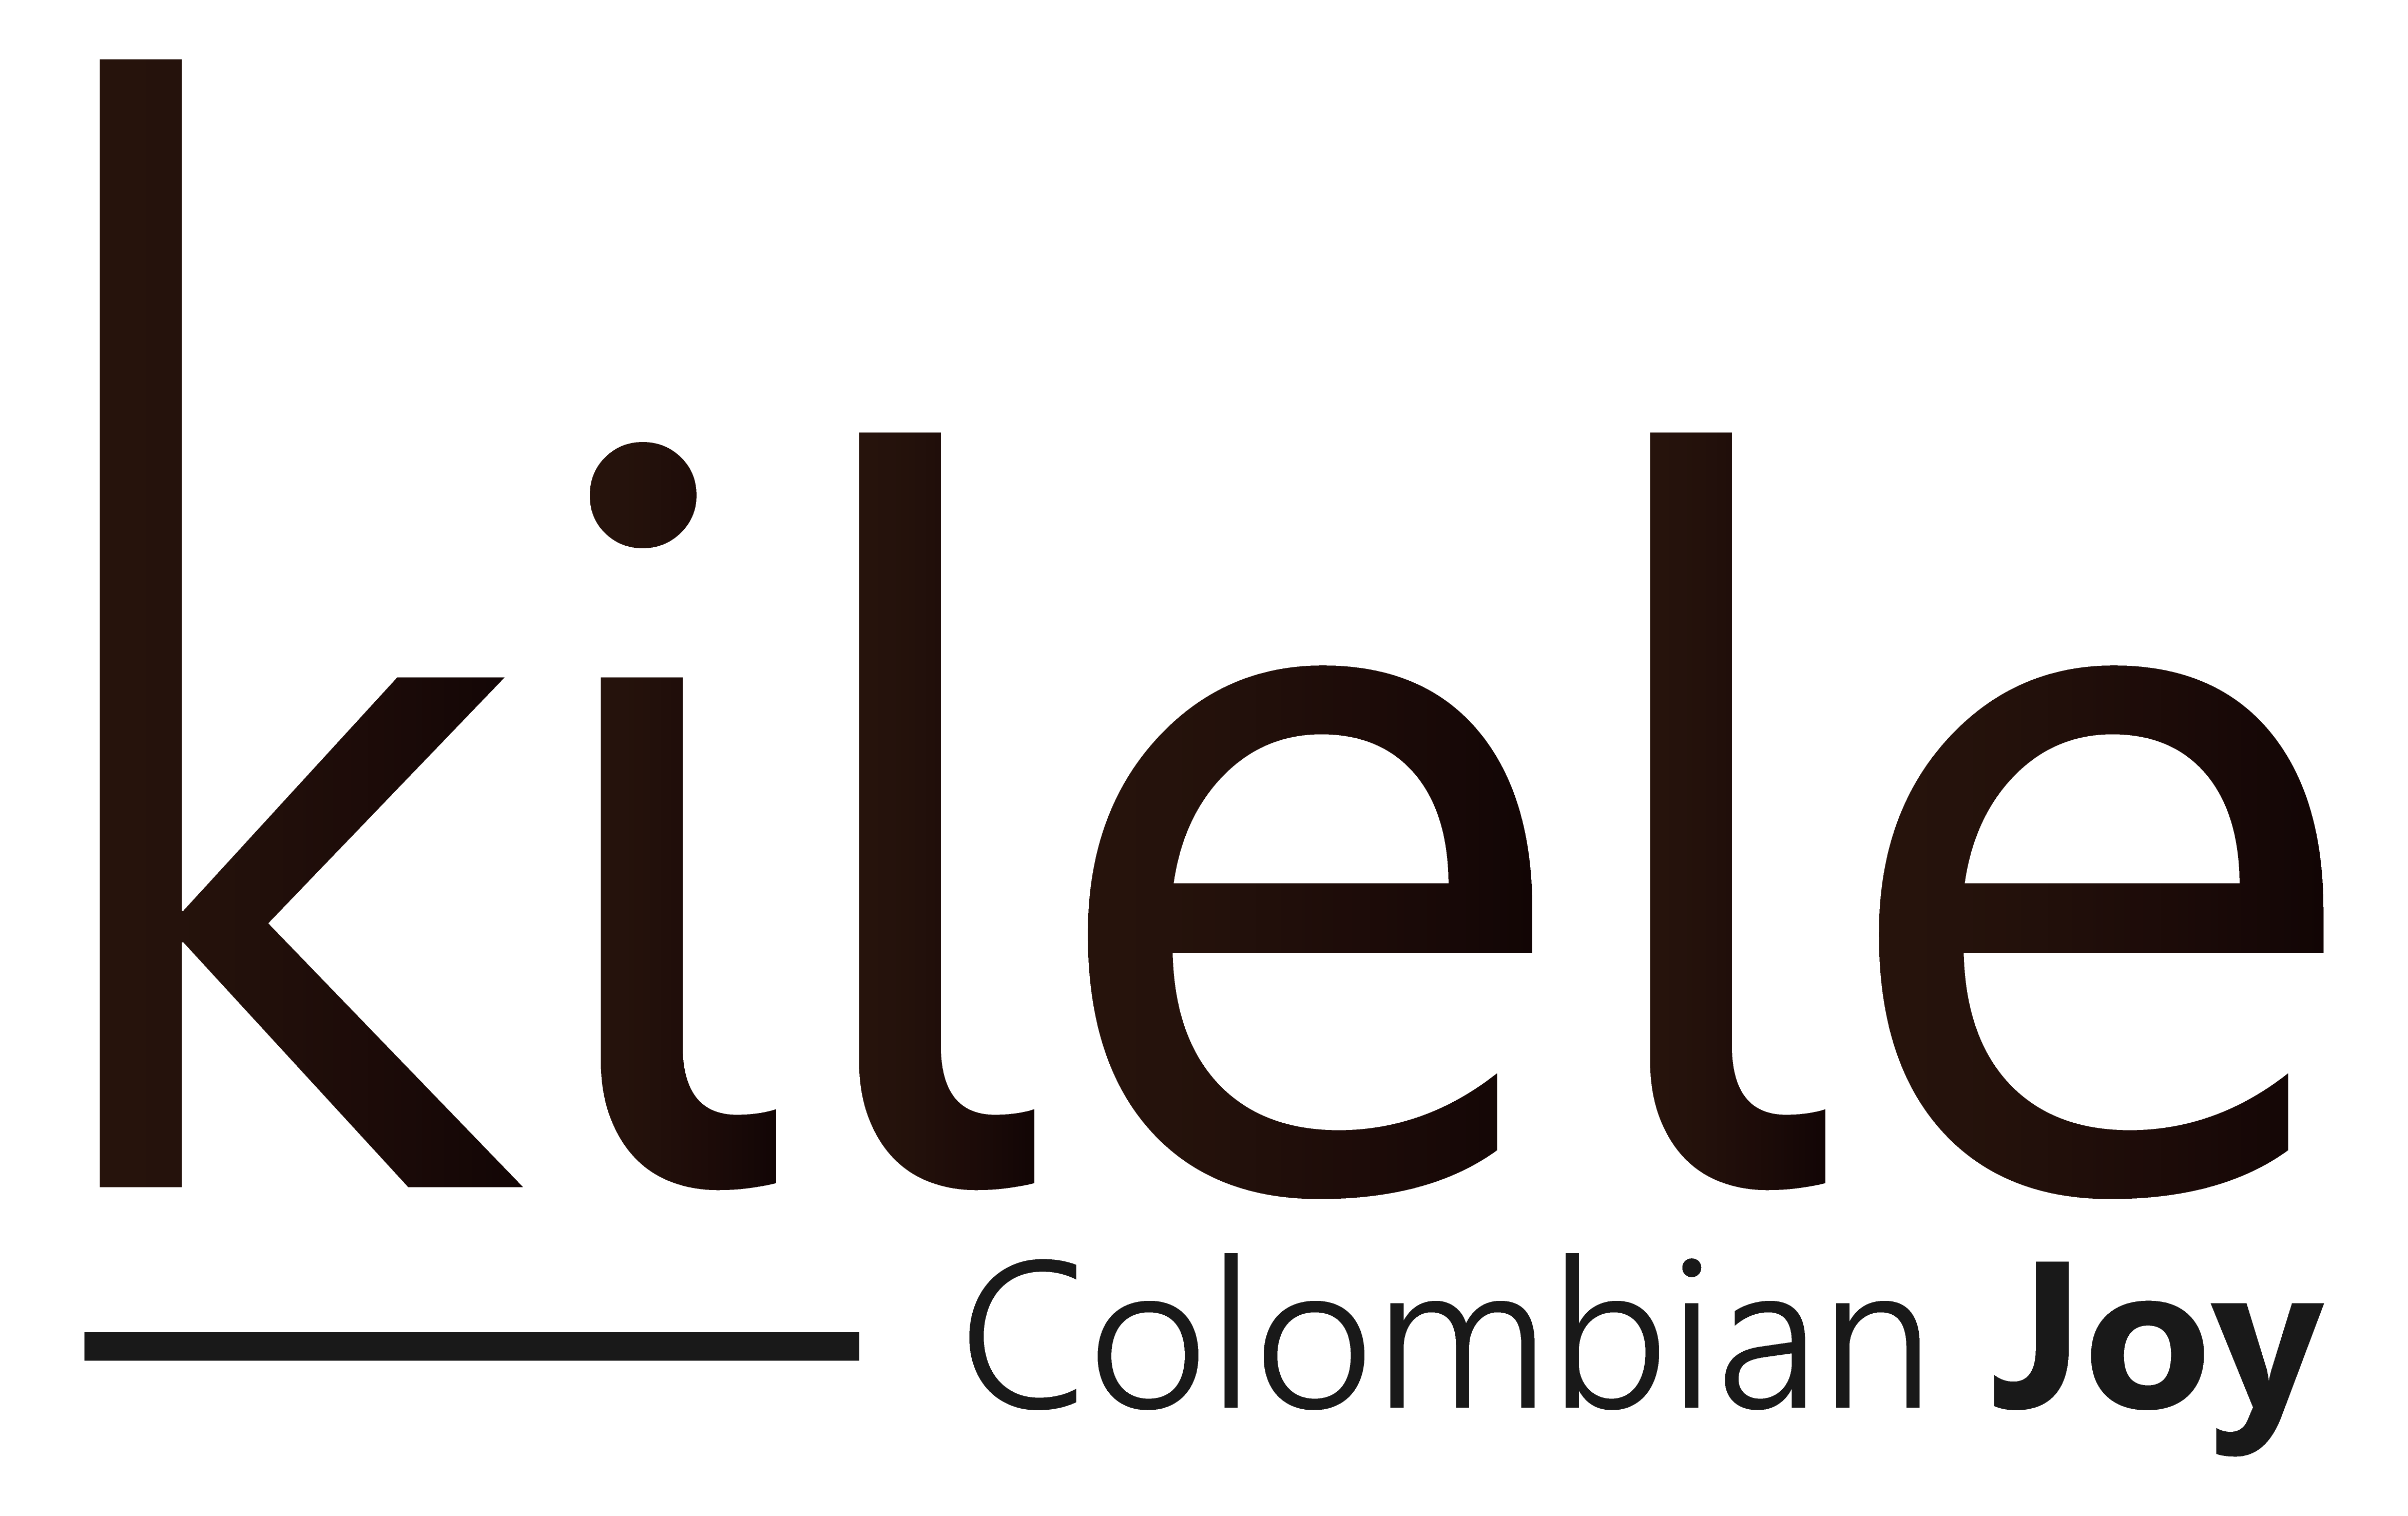 Kilele Colombian Joy